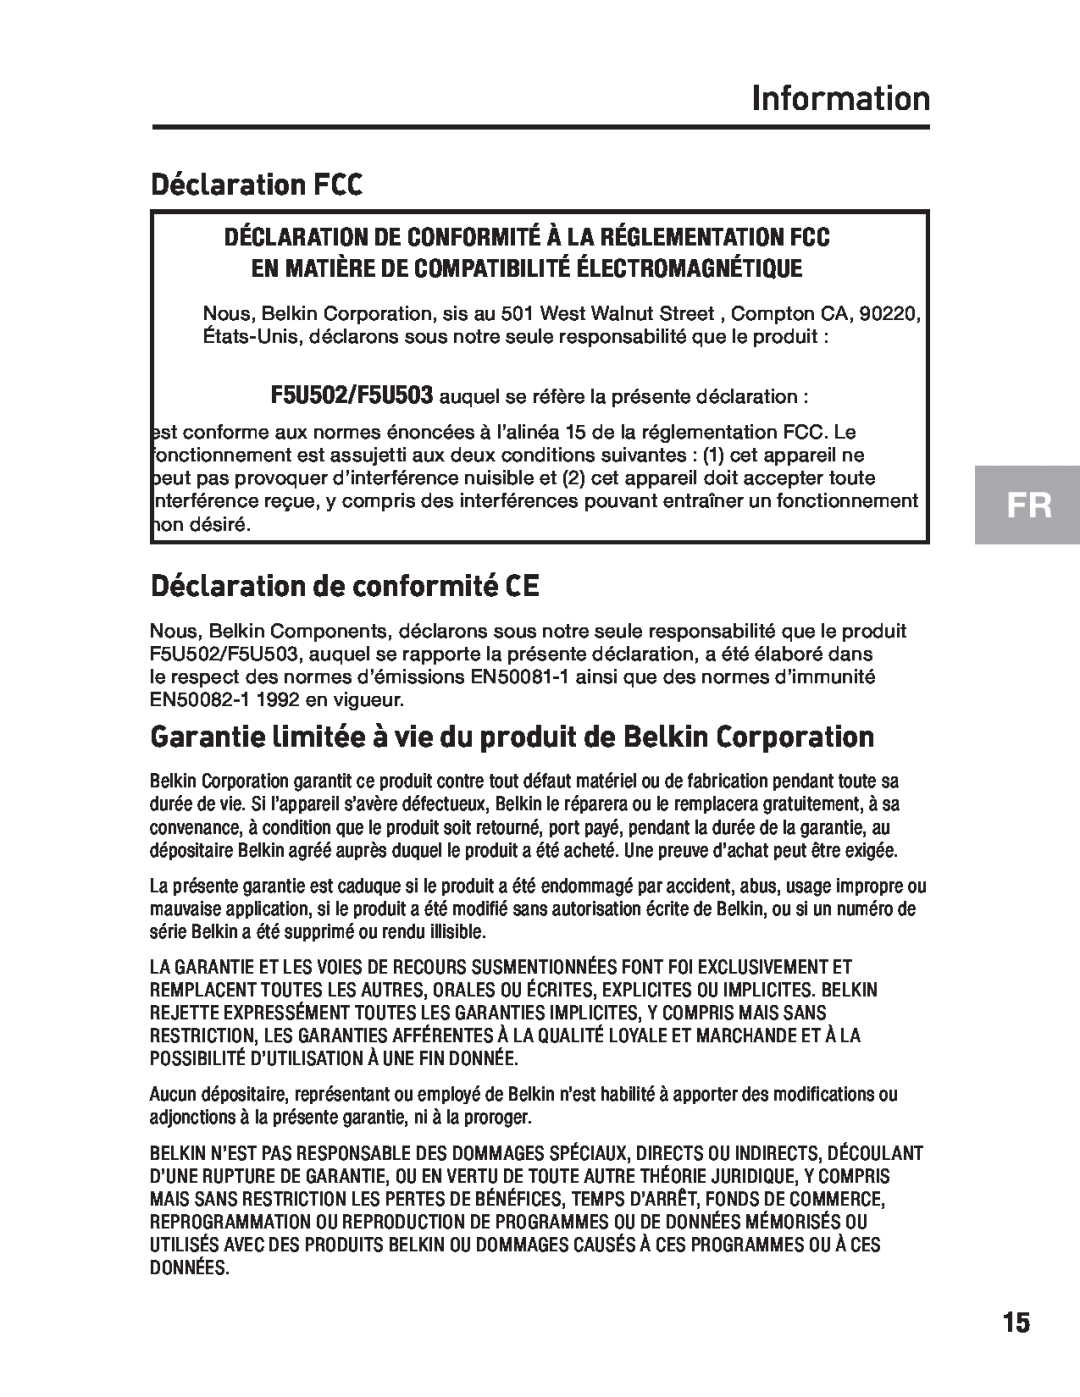 Belkin F5U502 Déclaration FCC, Déclaration de conformité CE, Garantie limitée à vie du produit de Belkin Corporation 